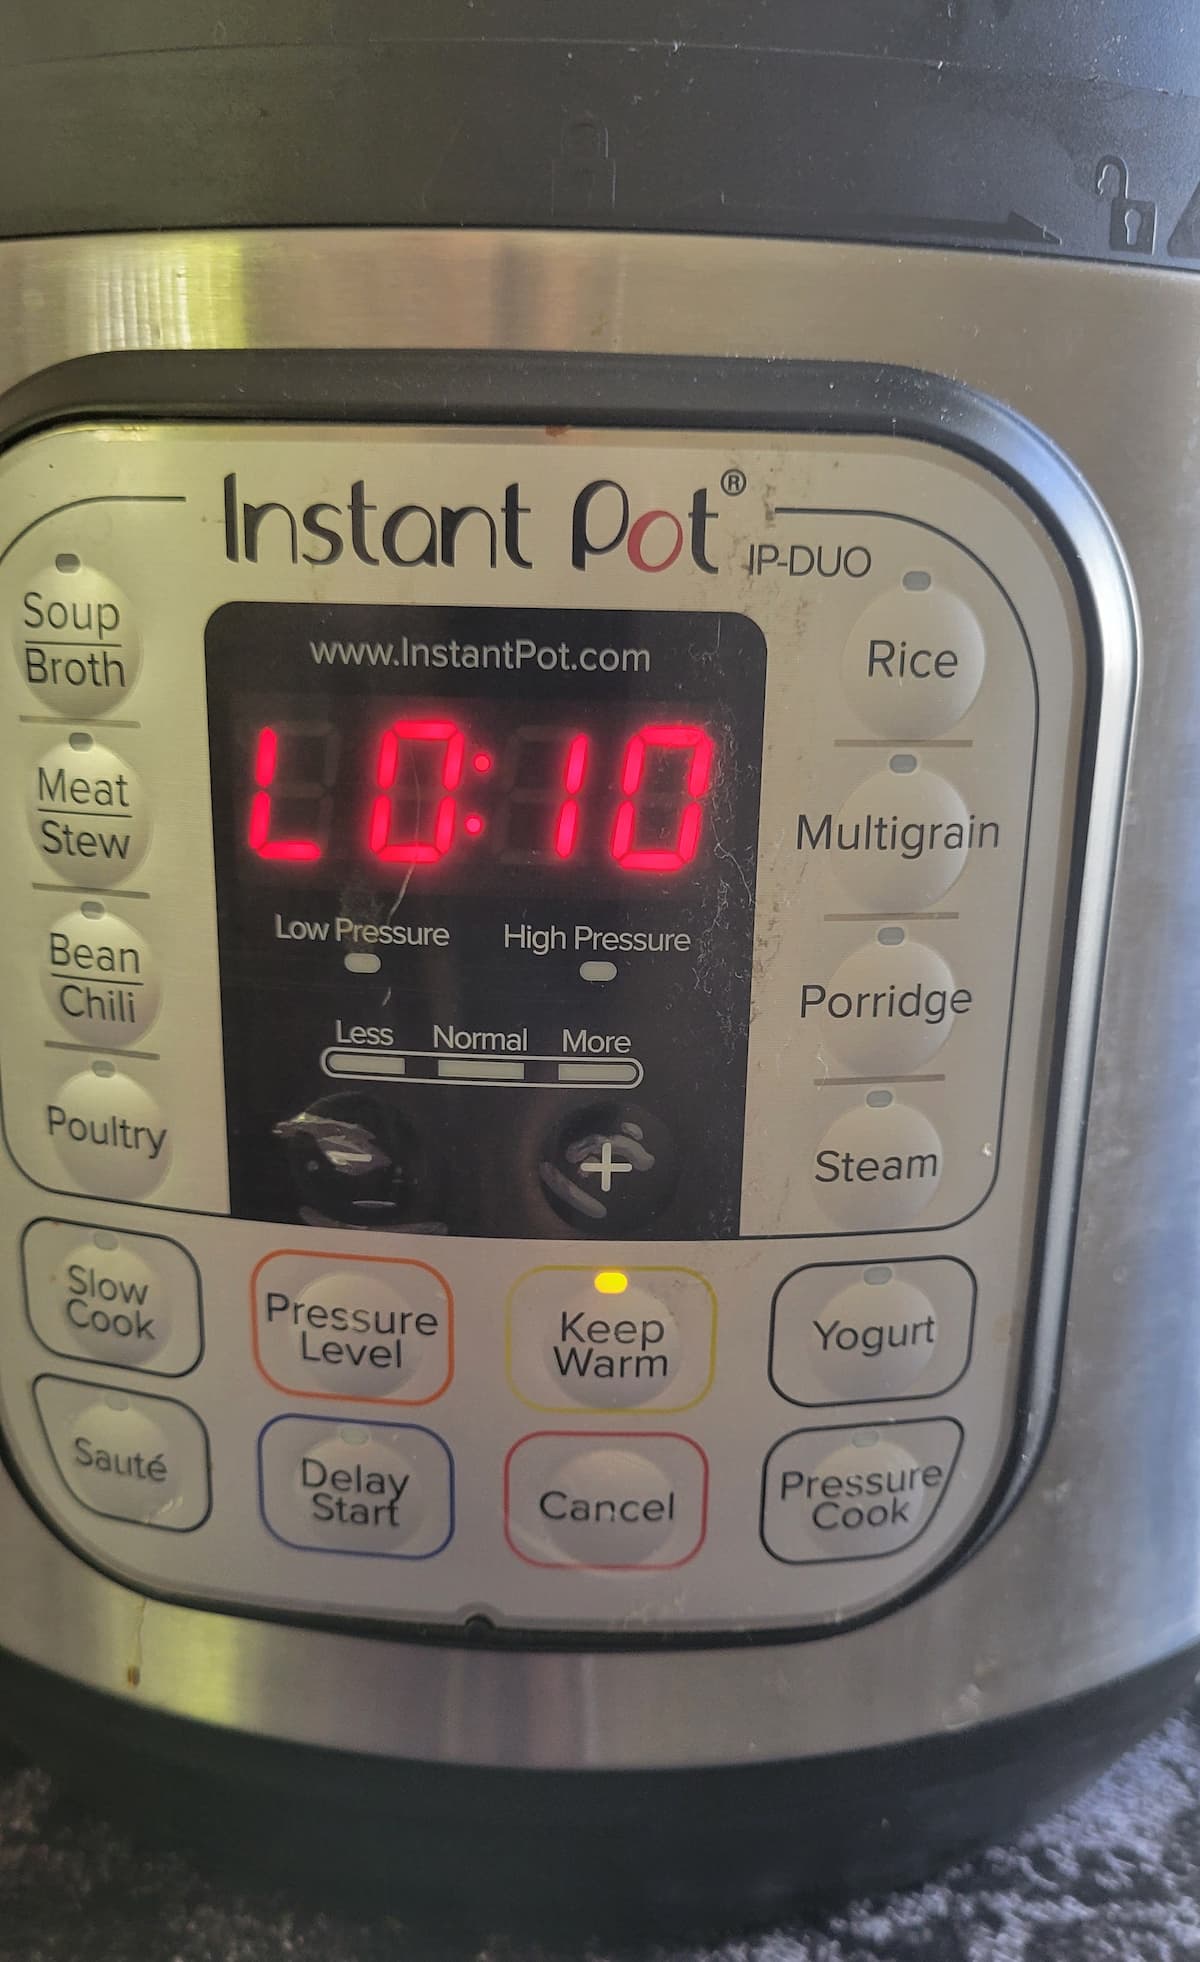 instant pot showing L0:10